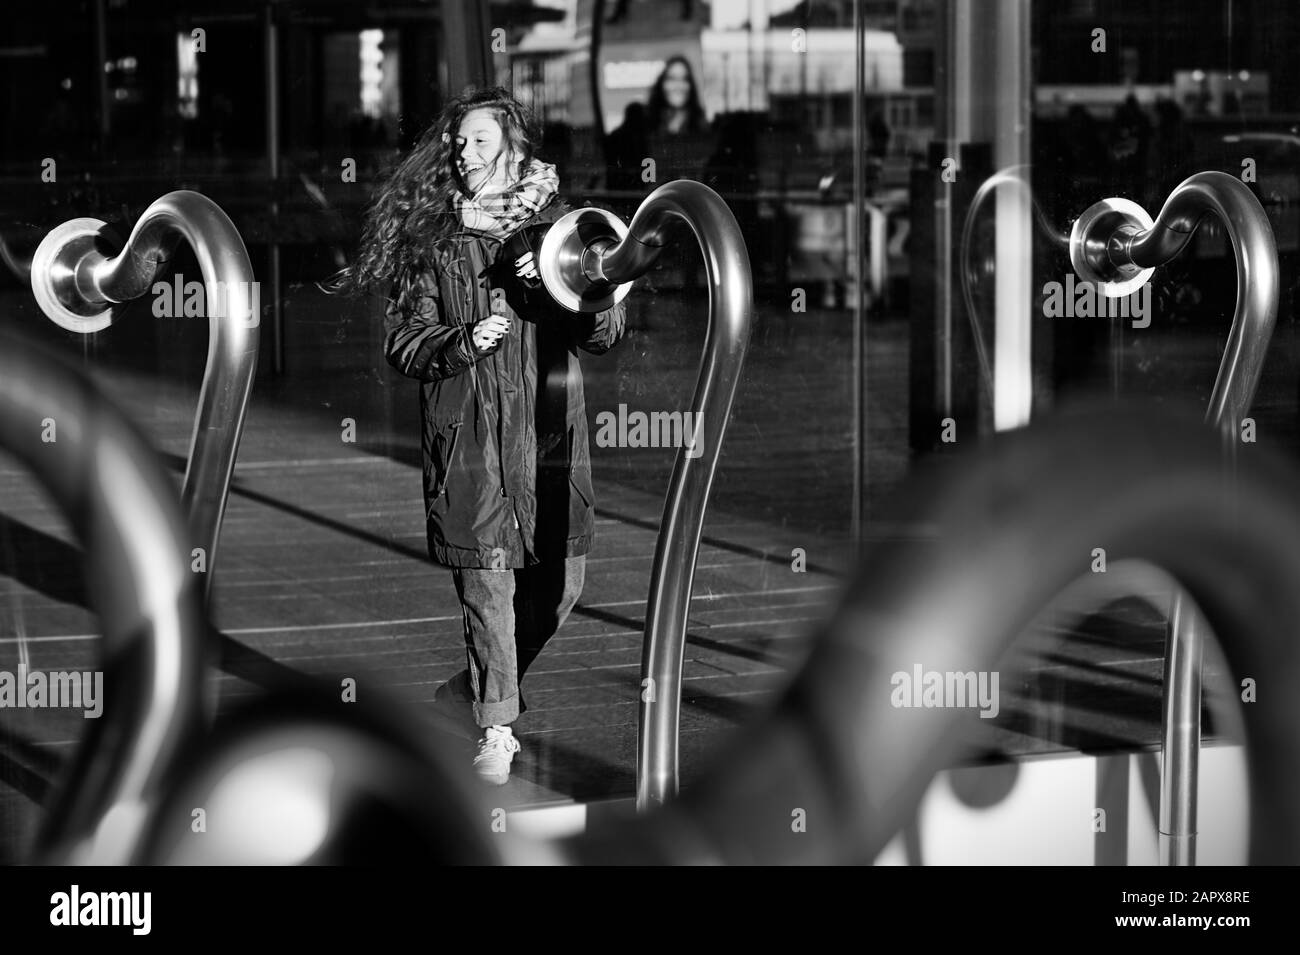 Ragazza con i capelli nel vento sorridente in 'le voci della città' artkork (Garutti, 2012) composto da tubi intercom in piazza Gae Aulenti, Milano, Italia Foto Stock